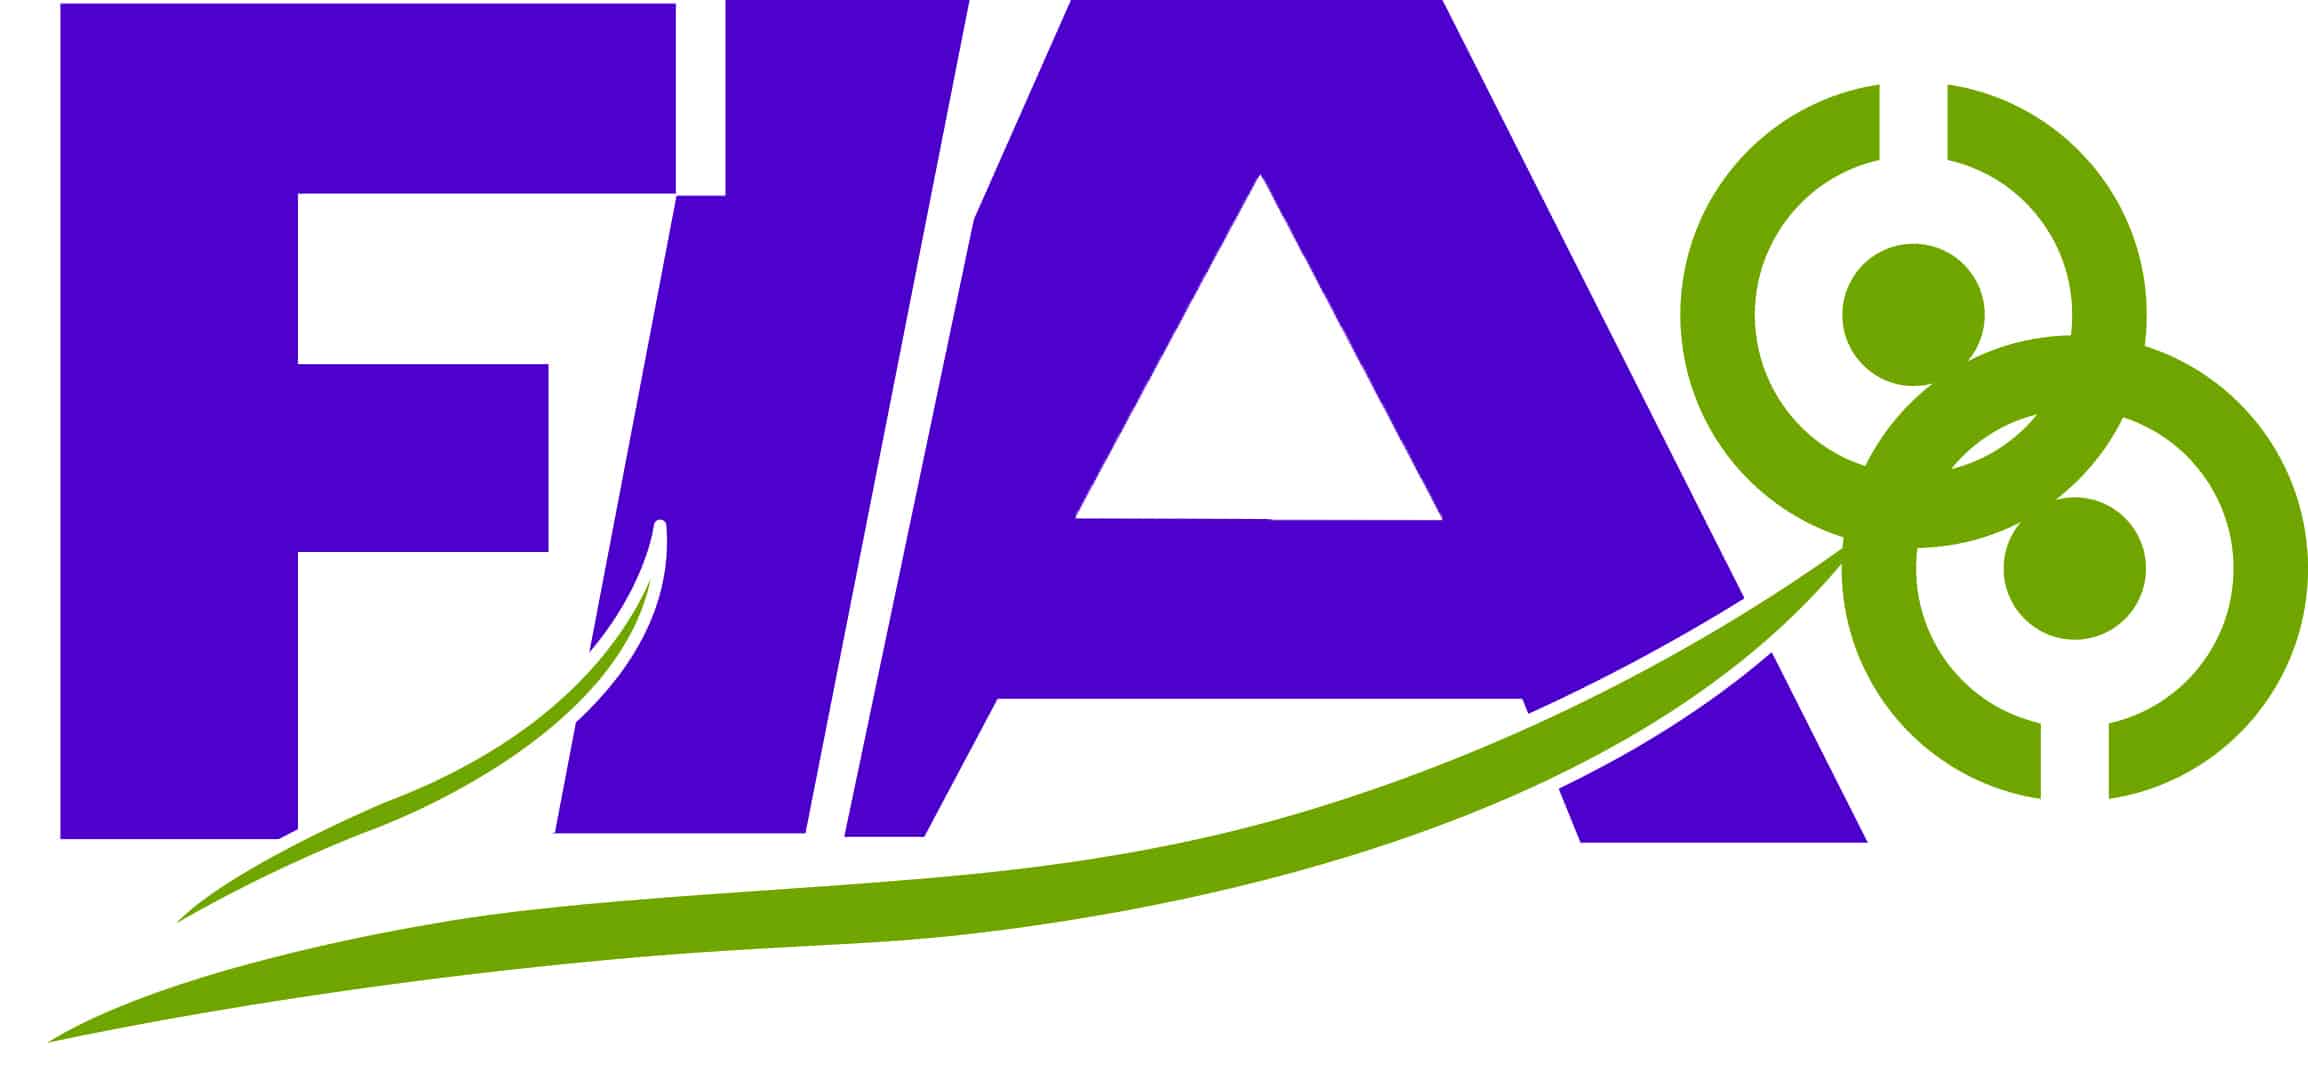 FIA Logo Design